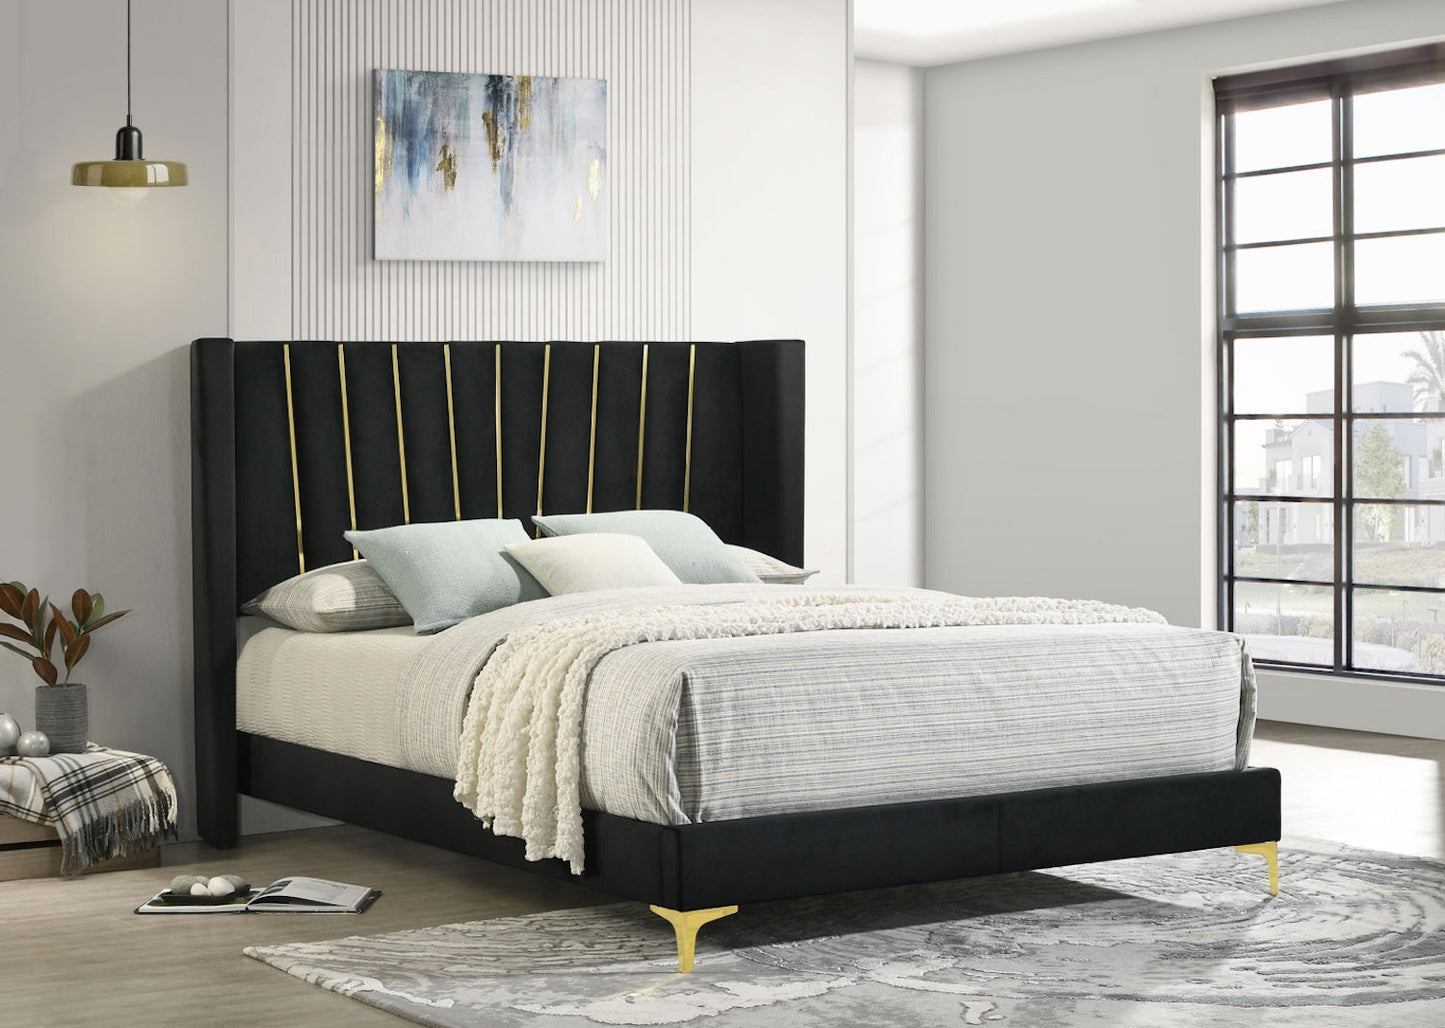 Kendall Upholstered Tufted King Bedroom Set - Black